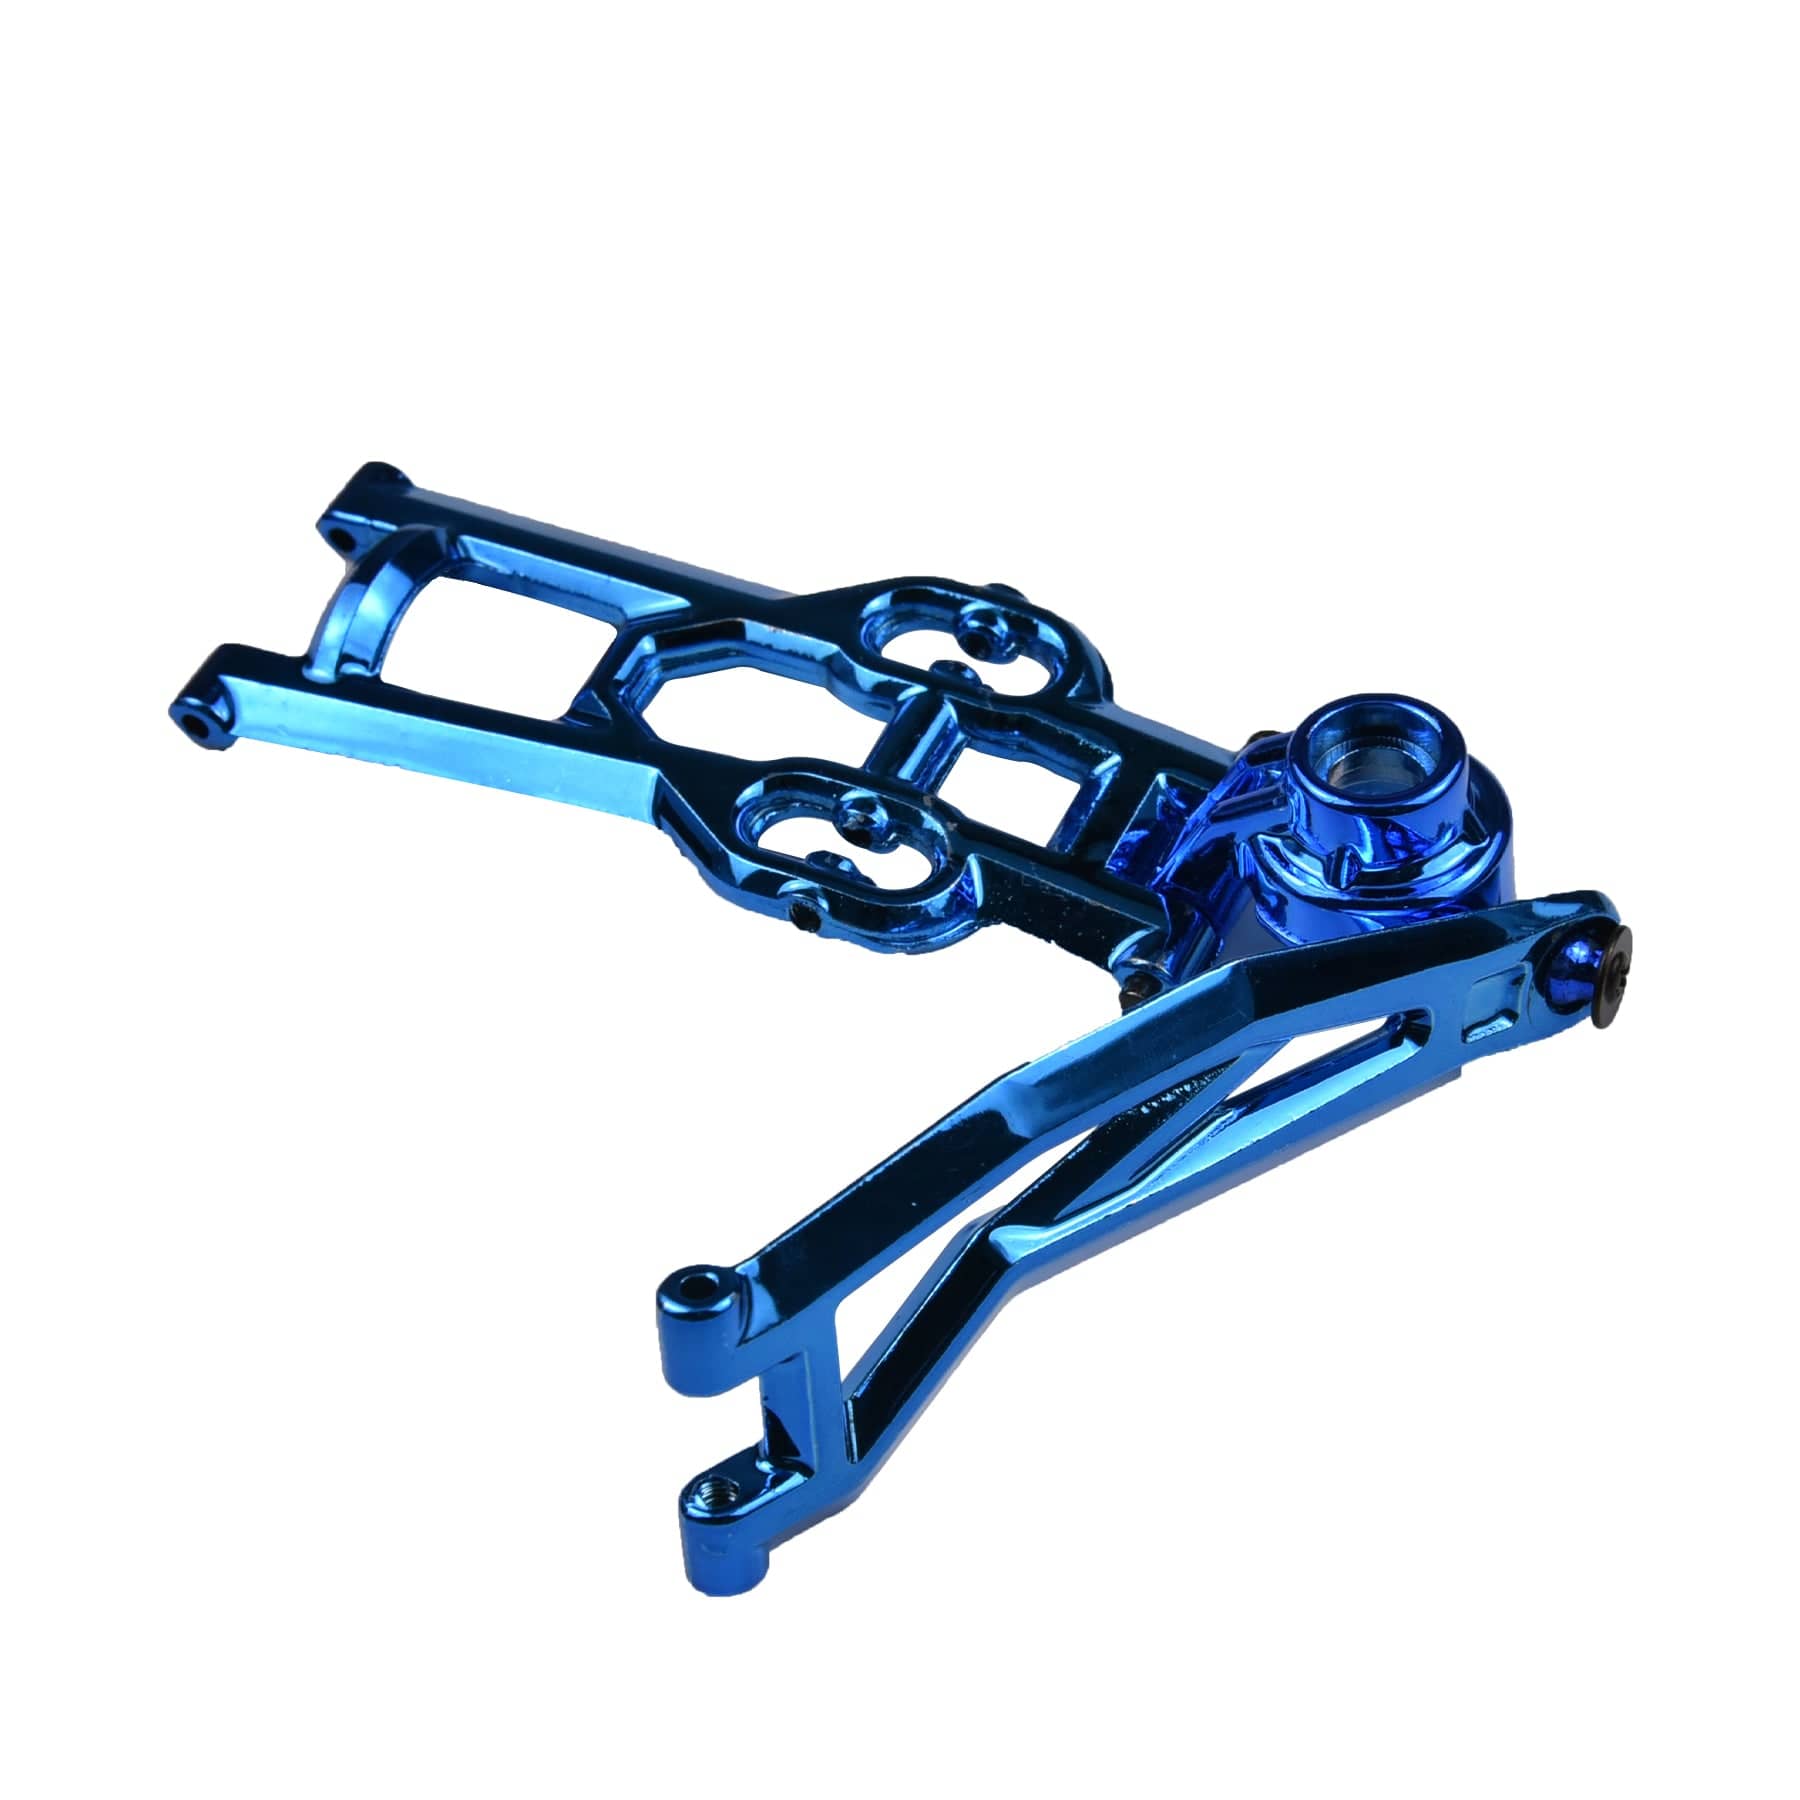 HOSIM RC Car Metal Rear Rocker Arm Assembly 1:10 Scale FY-JSB02-B Blue for X07 X08